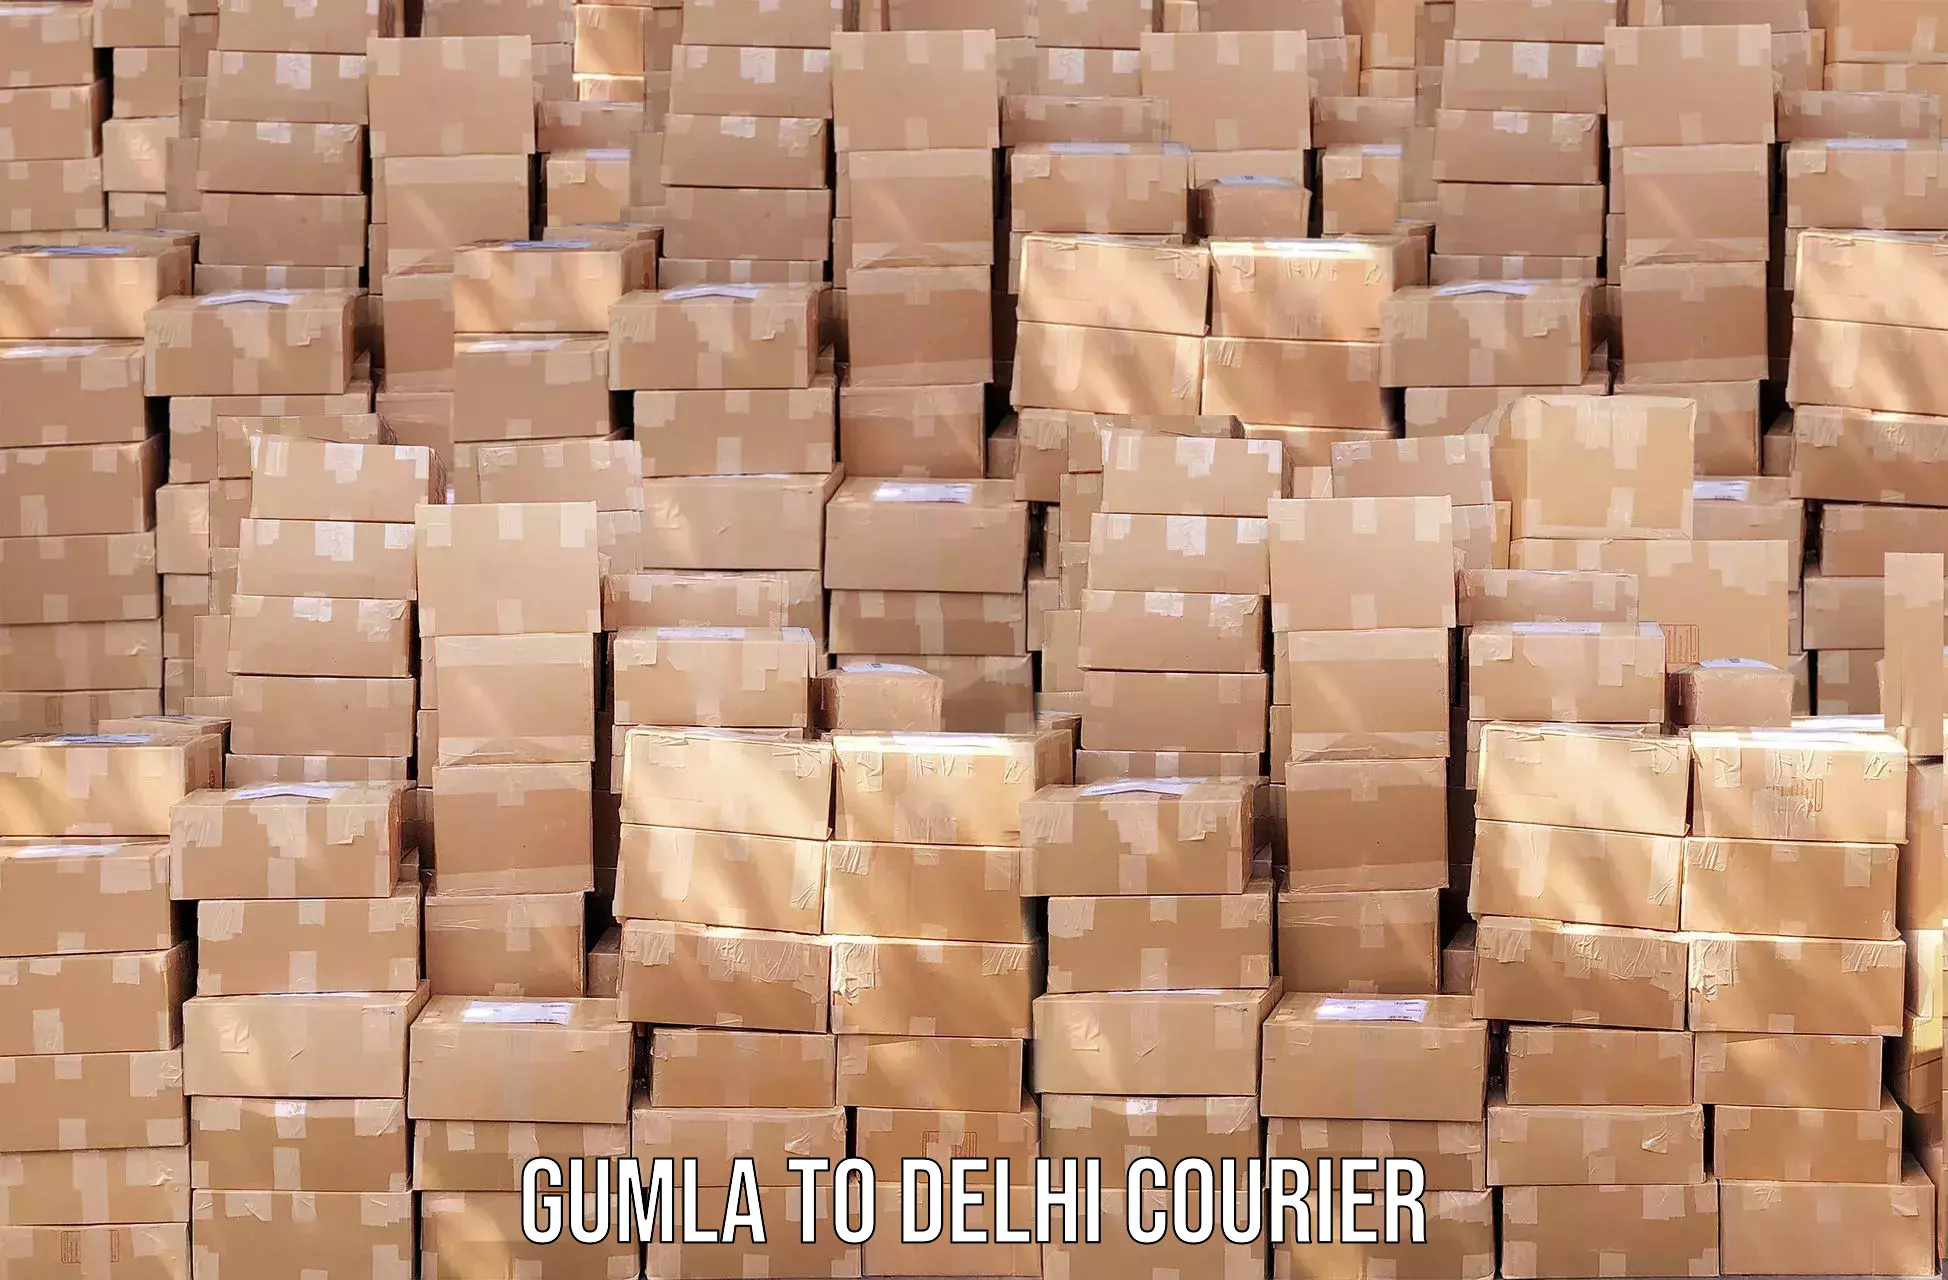 Comprehensive shipping network in Gumla to Jamia Millia Islamia New Delhi